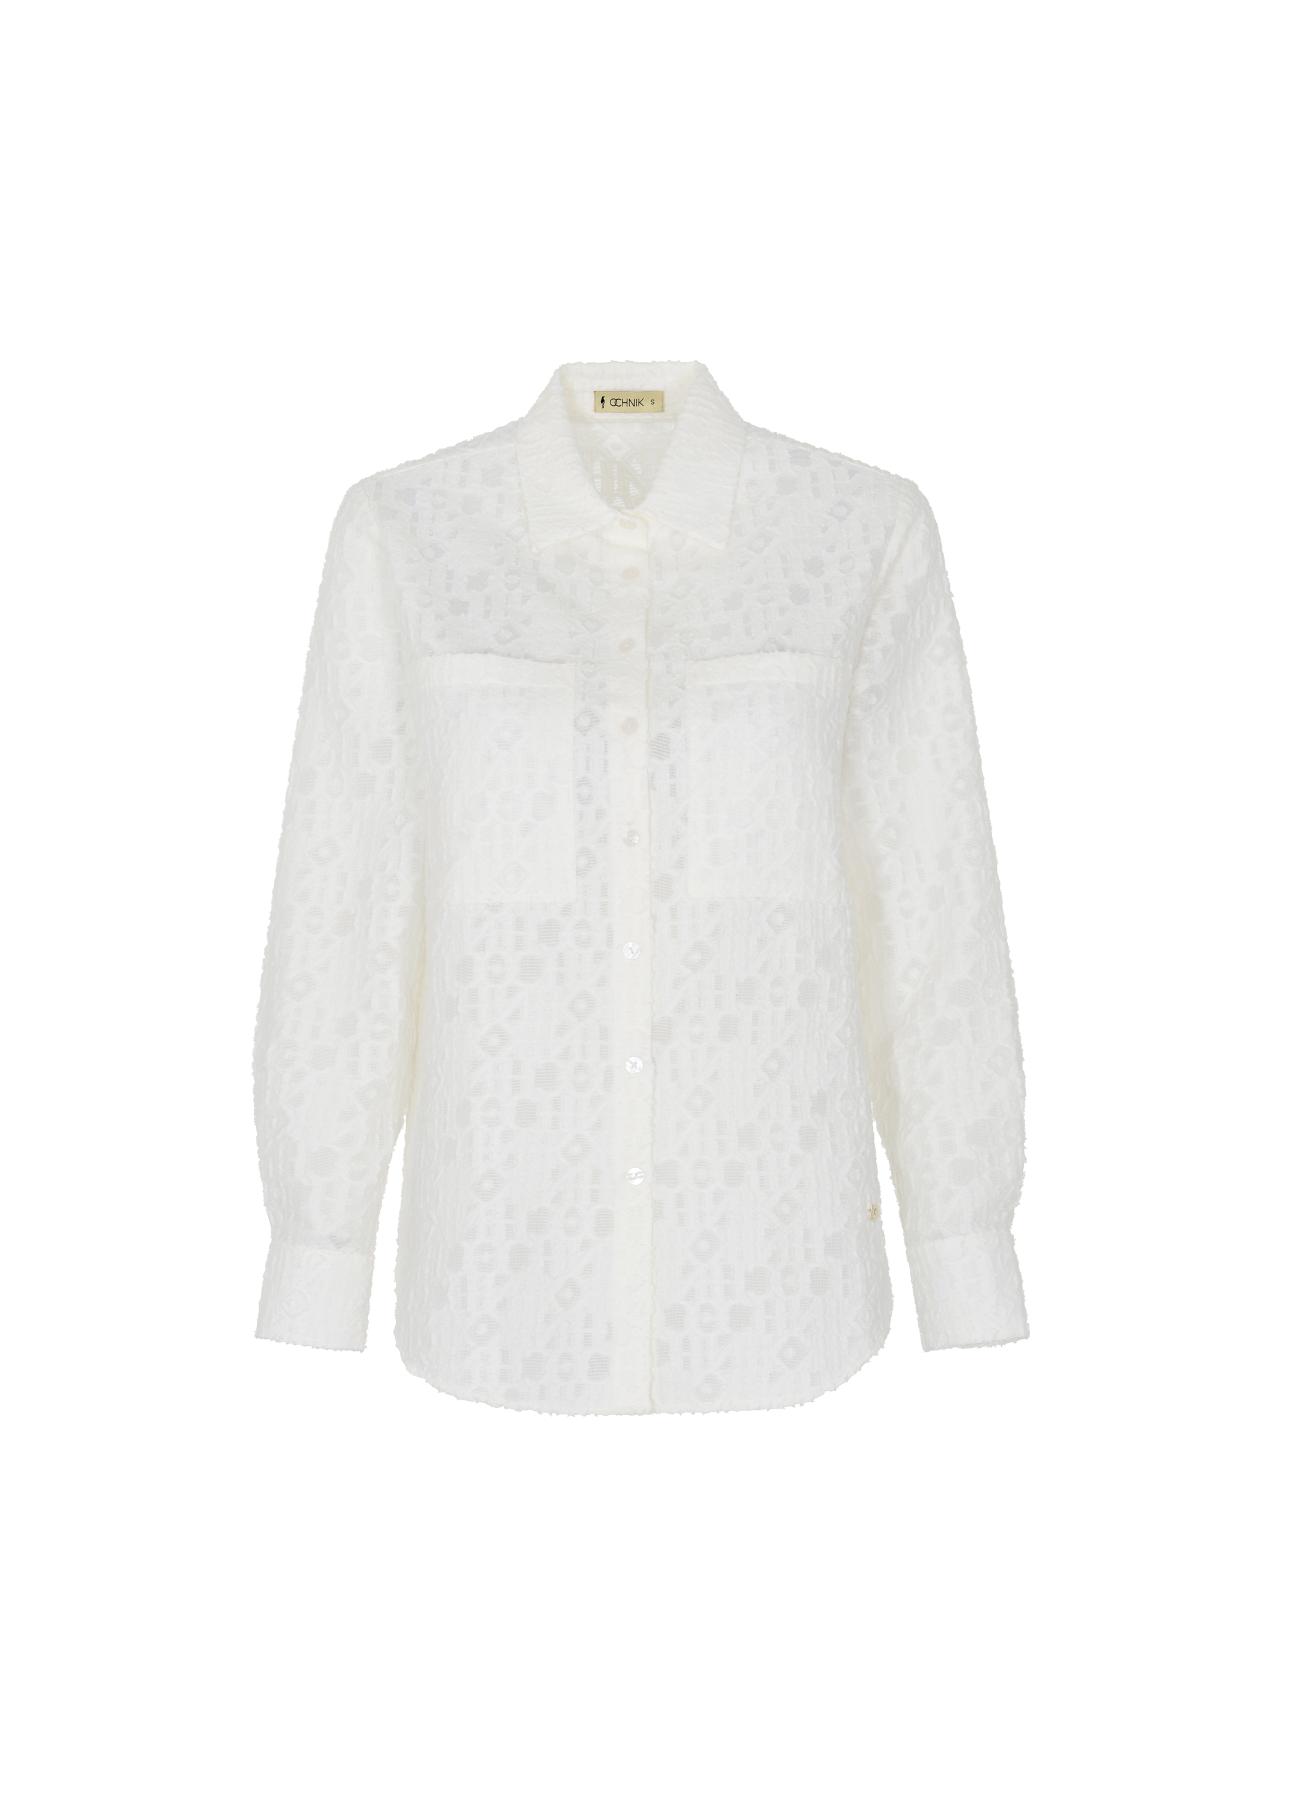 Biała koszula damska z długim rękawem KOSDT-0094-12(W22)-04